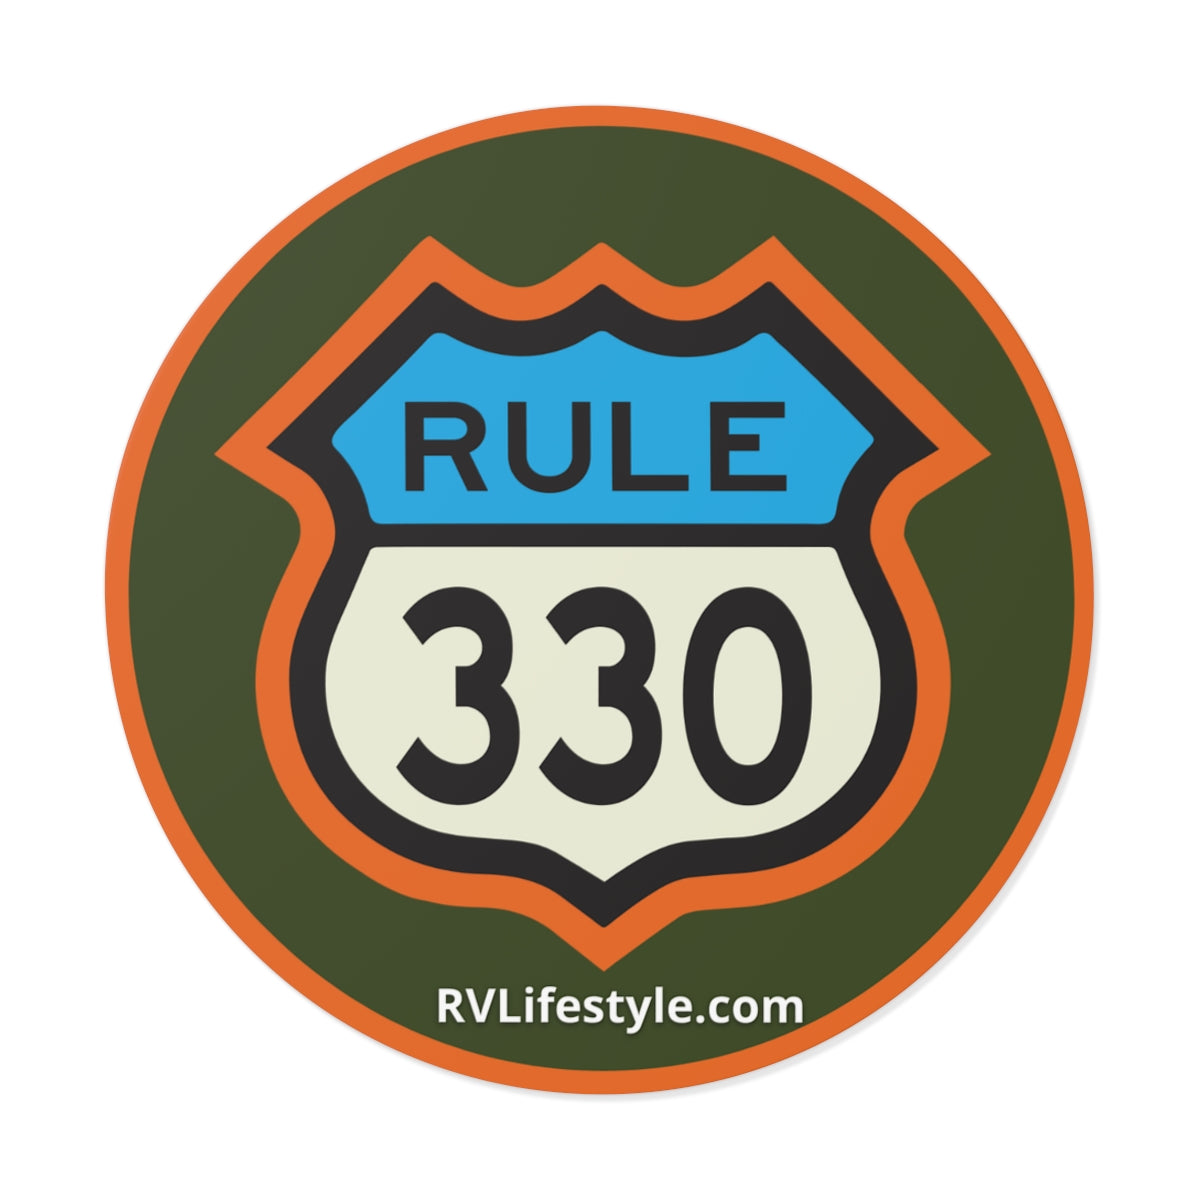 RV Lifestyle 330 Rule Round Vinyl Sticker